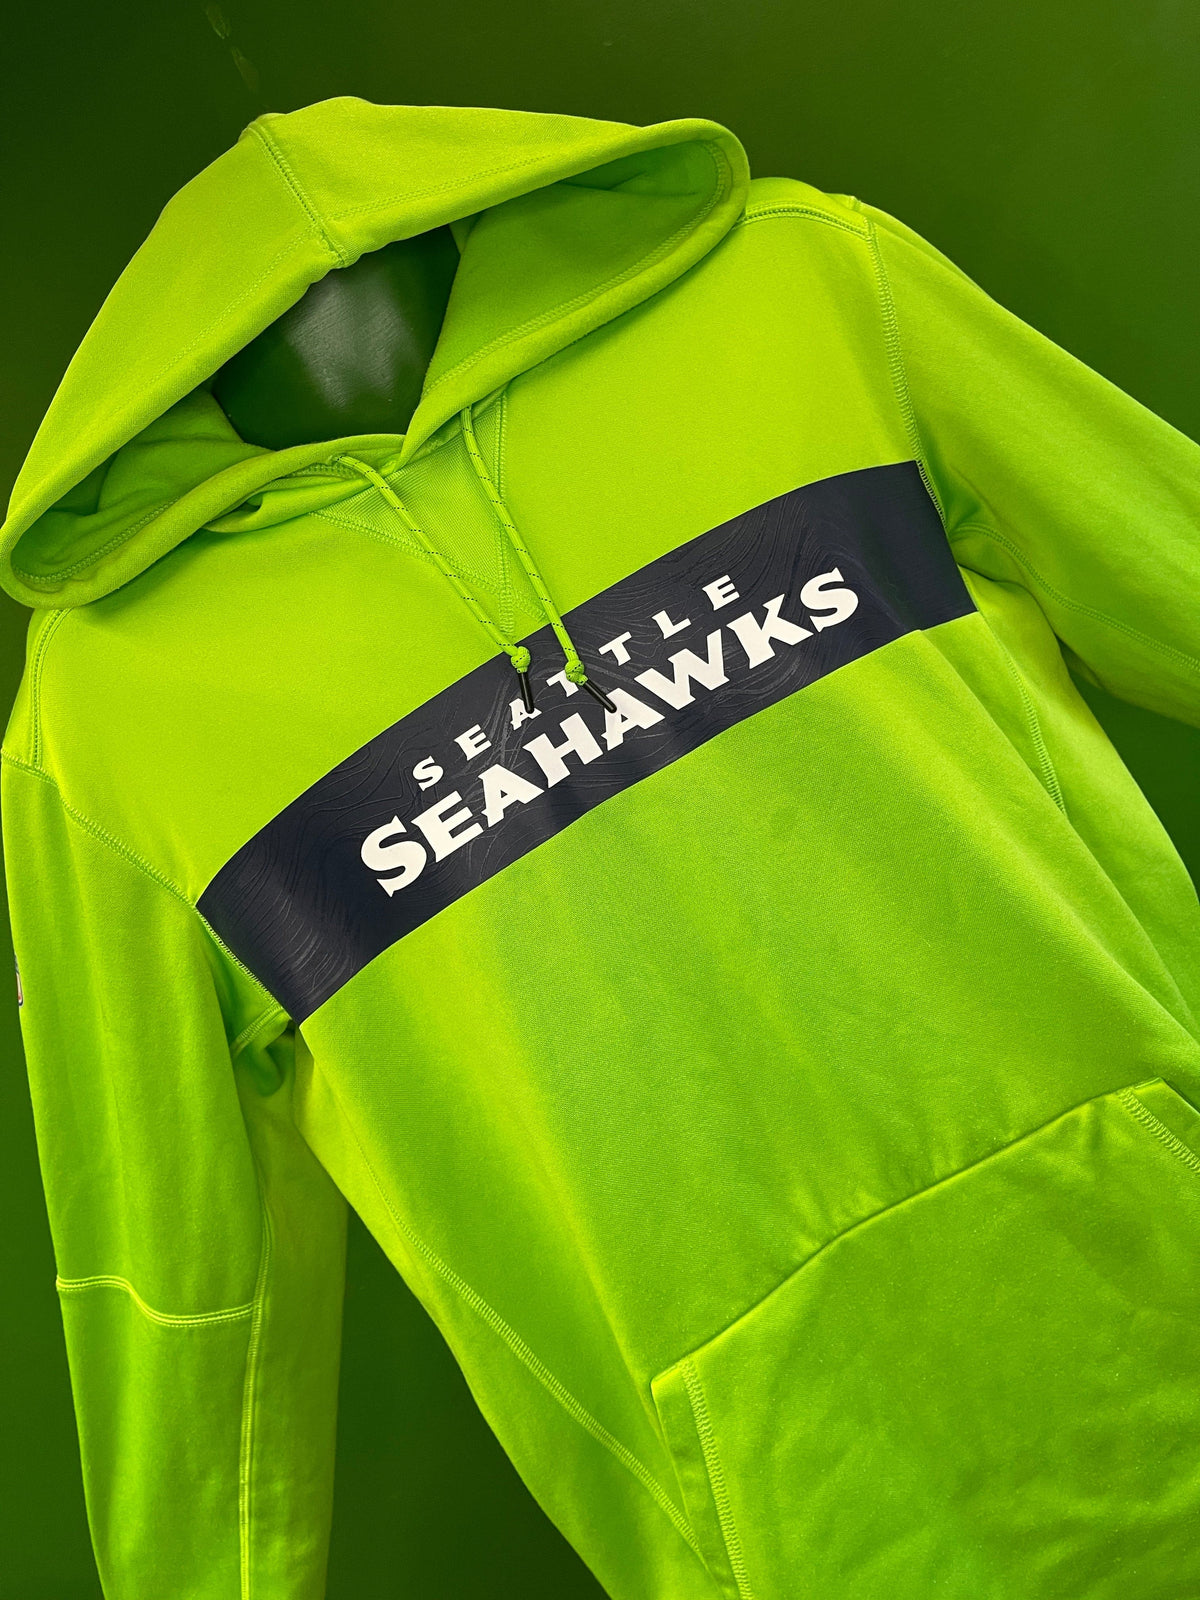 NFL Seattle Seahawks Green Pullover Hoodie Men's Medium